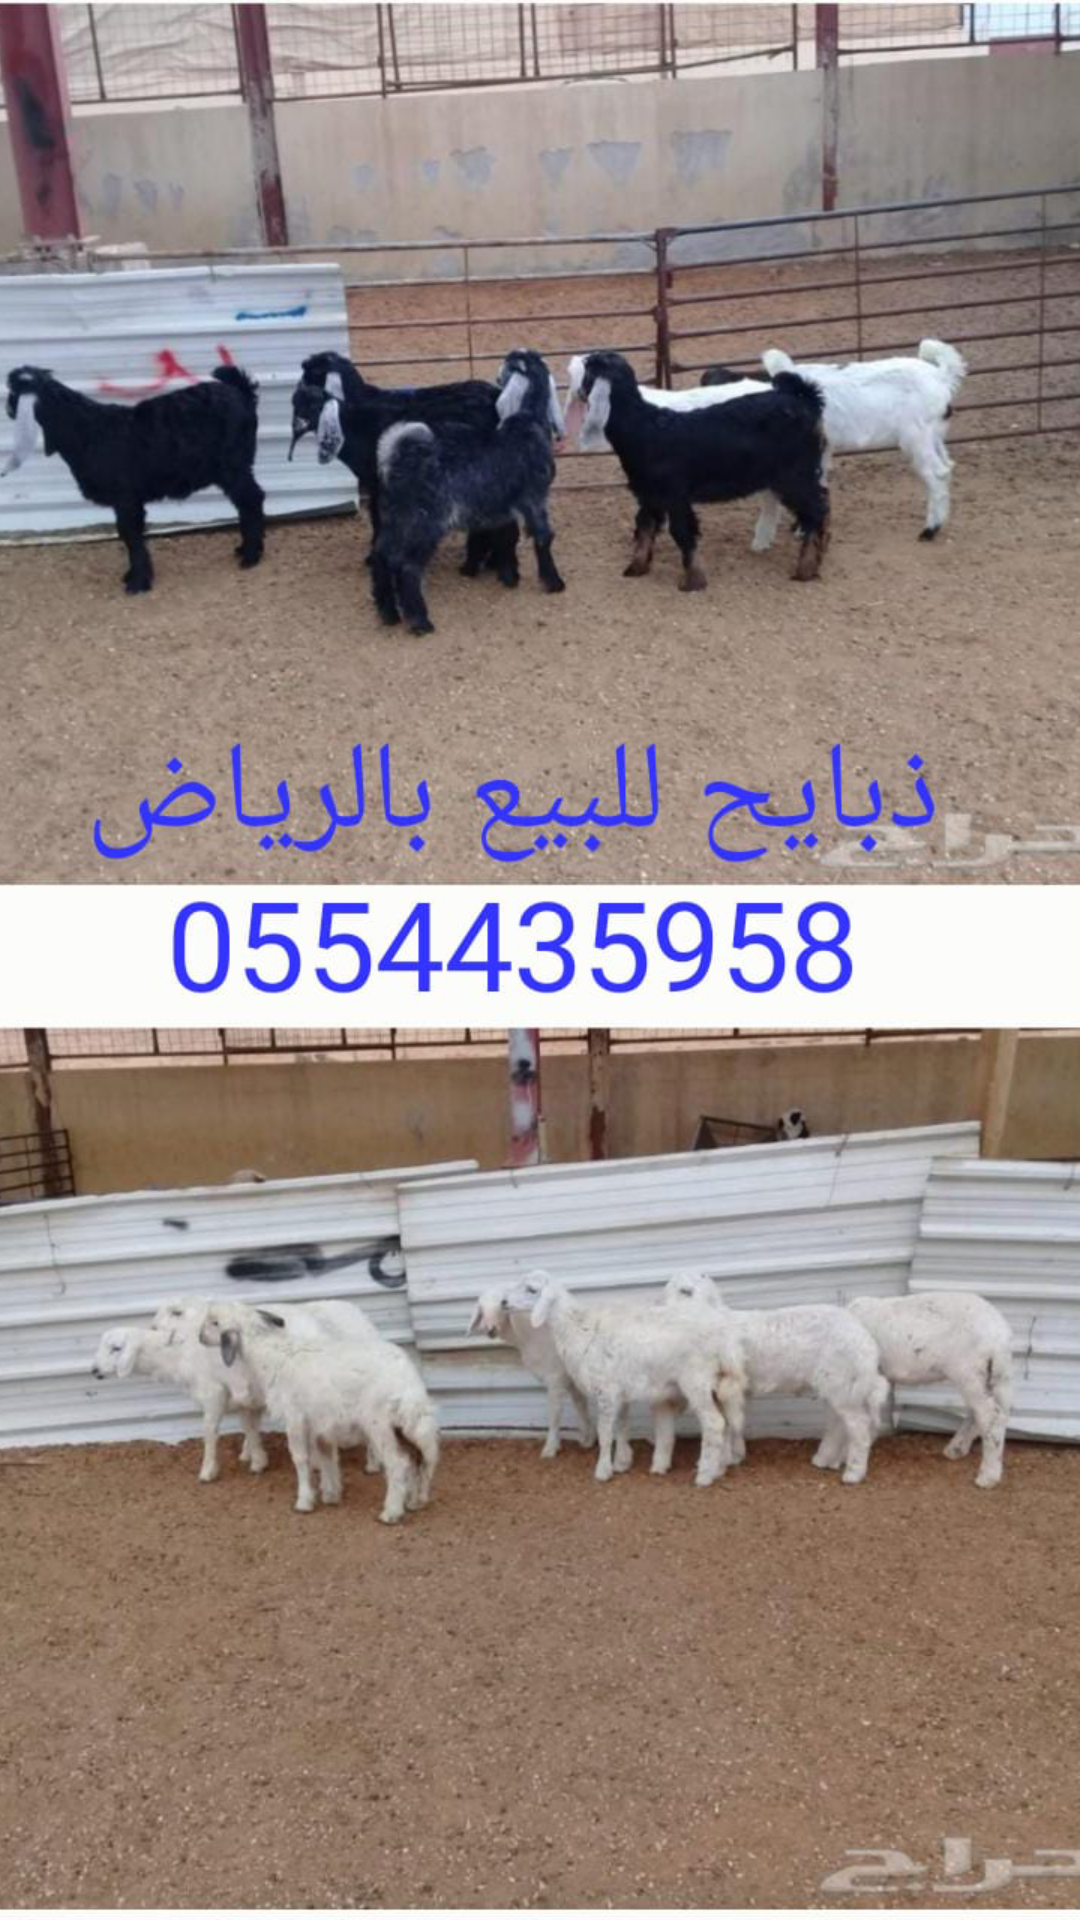 ابو فهد 0554435958 ذبايح للمناسبات للبيع في الرياض،محلات ذبايح في الرياض P_121204hte0